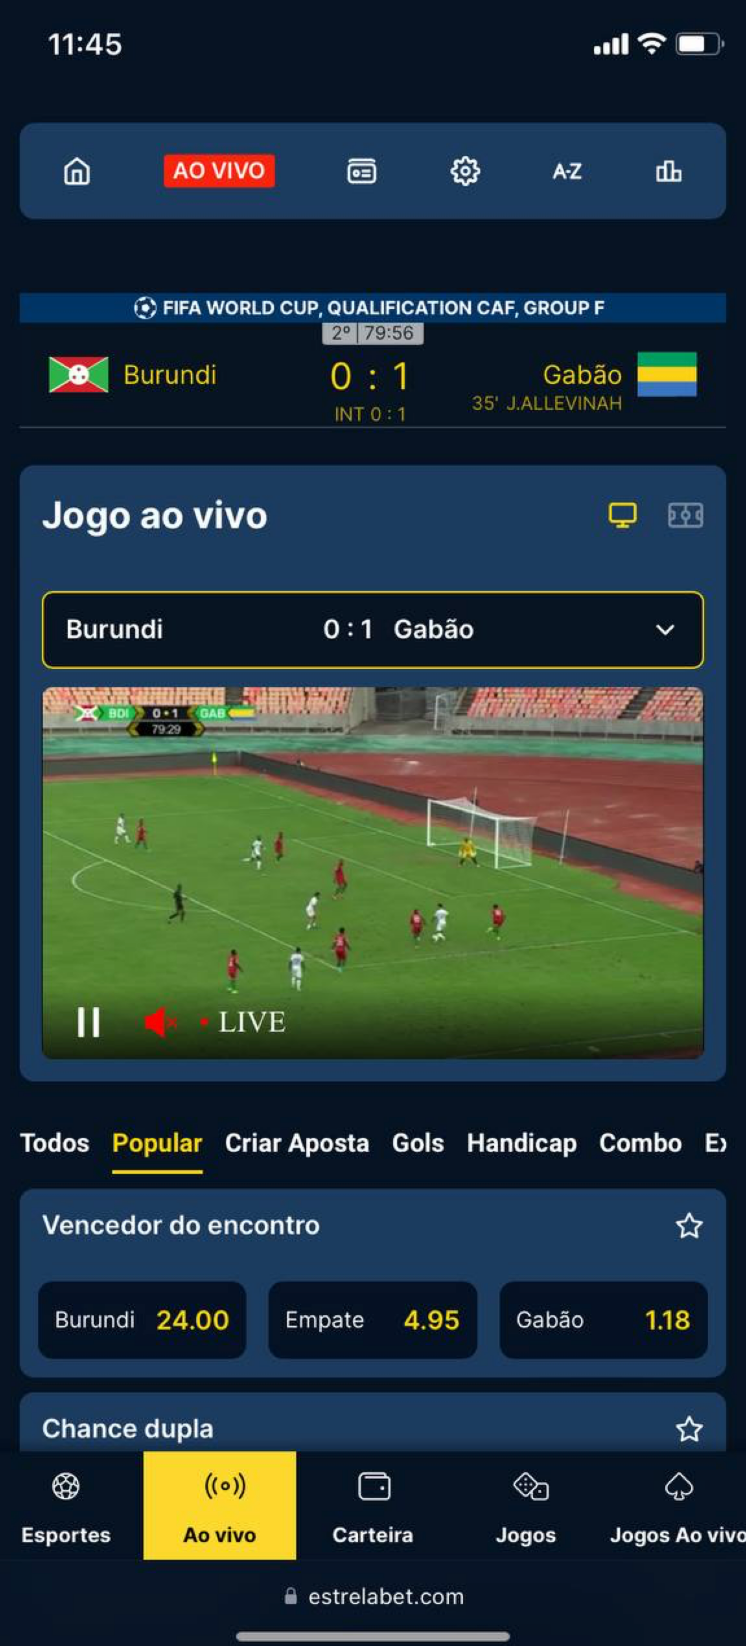 Transmissão ao vivo no site mobile da Estrela Bet. 